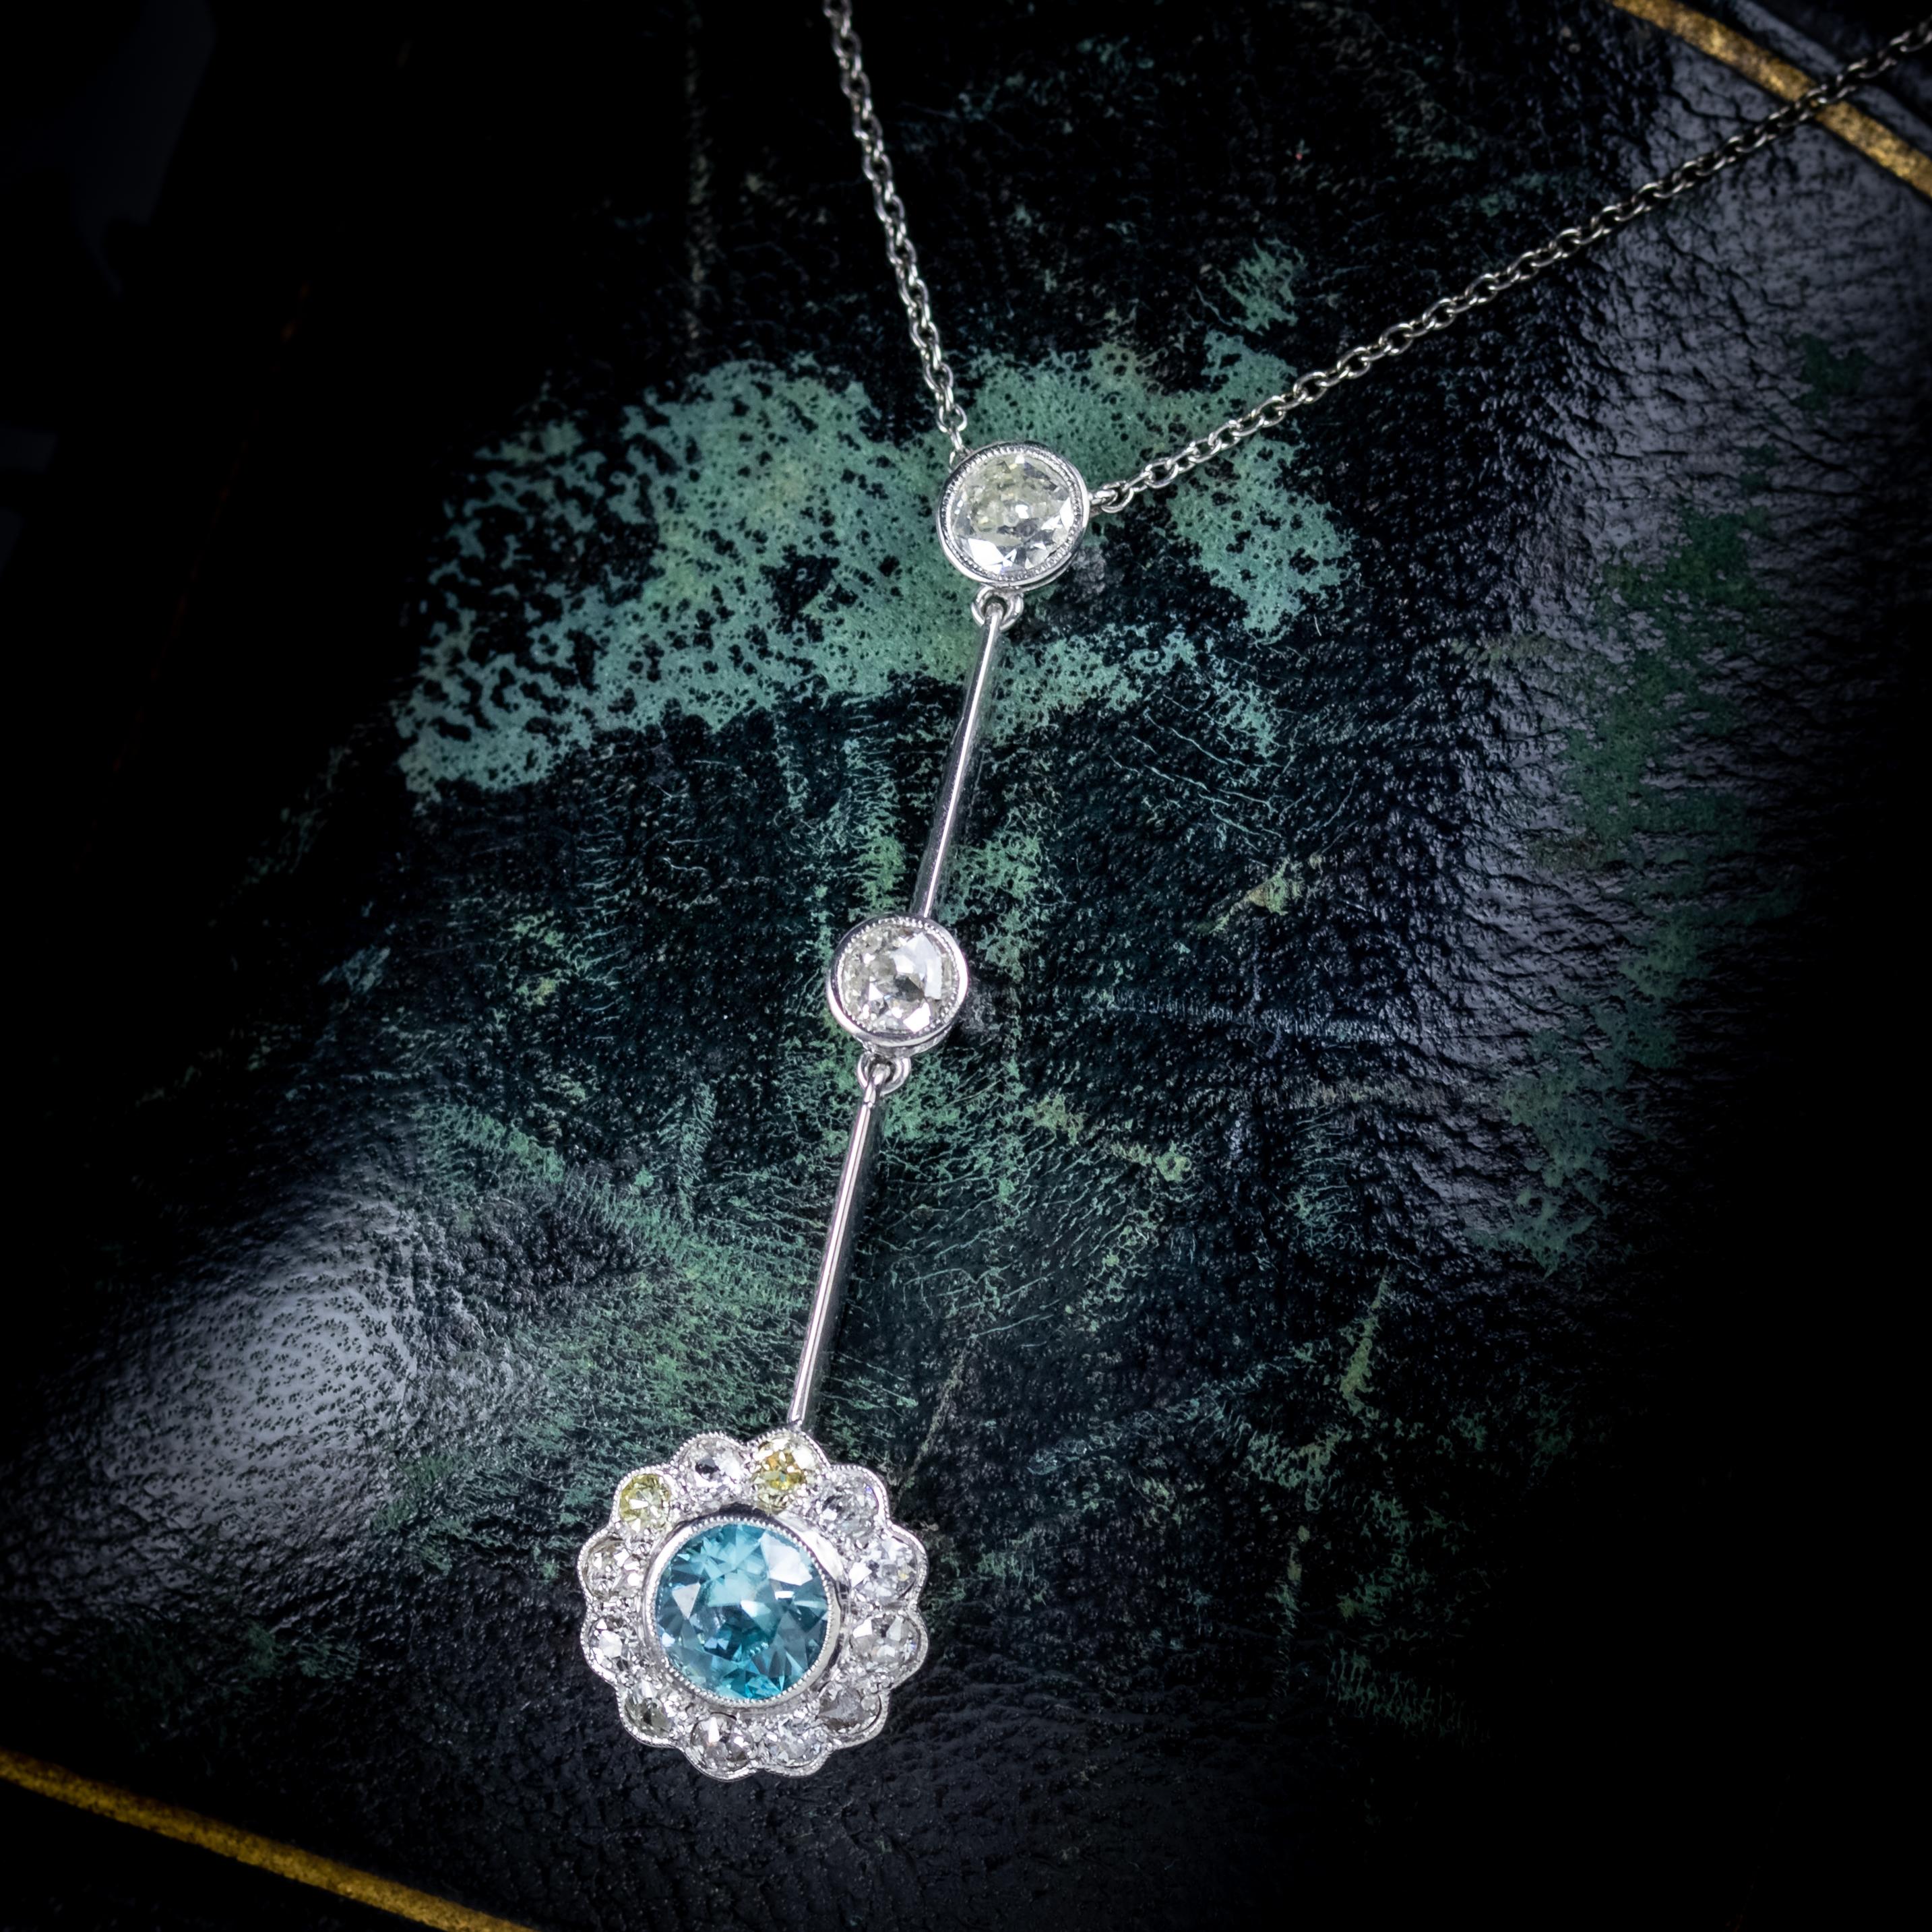 Antique Edwardian Blue Zircon Diamond Lavaliere Necklace Circa 1910 For Sale 3